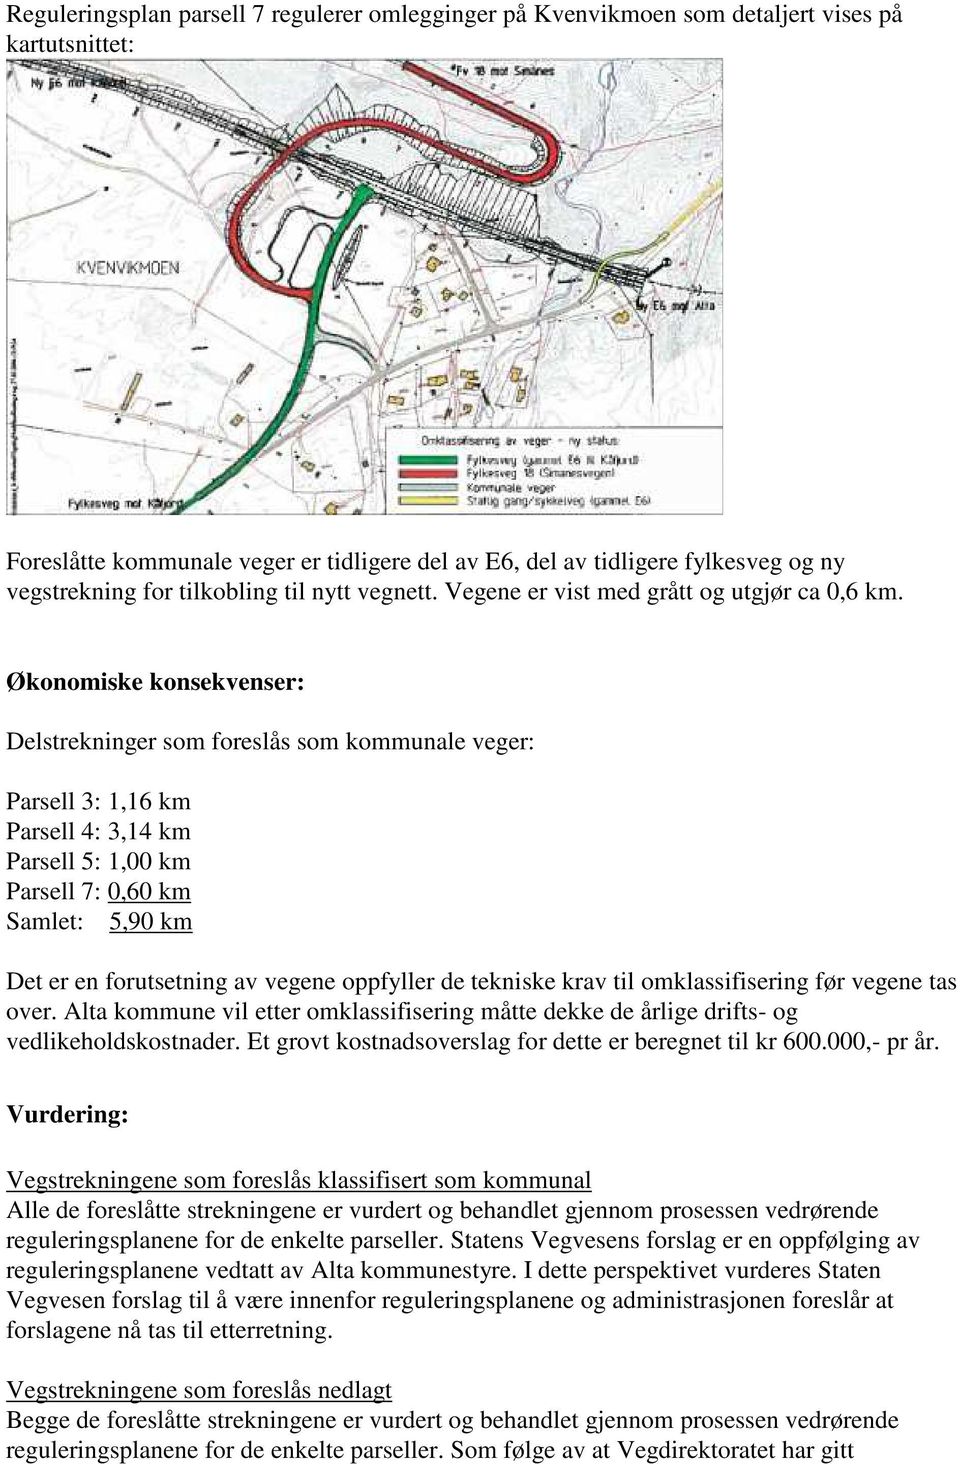 Økonomiske konsekvenser: Delstrekninger som foreslås som kommunale veger: Parsell 3: 1,16 km Parsell 4: 3,14 km Parsell 5: 1,00 km Parsell 7: 0,60 km Samlet: 5,90 km Det er en forutsetning av vegene